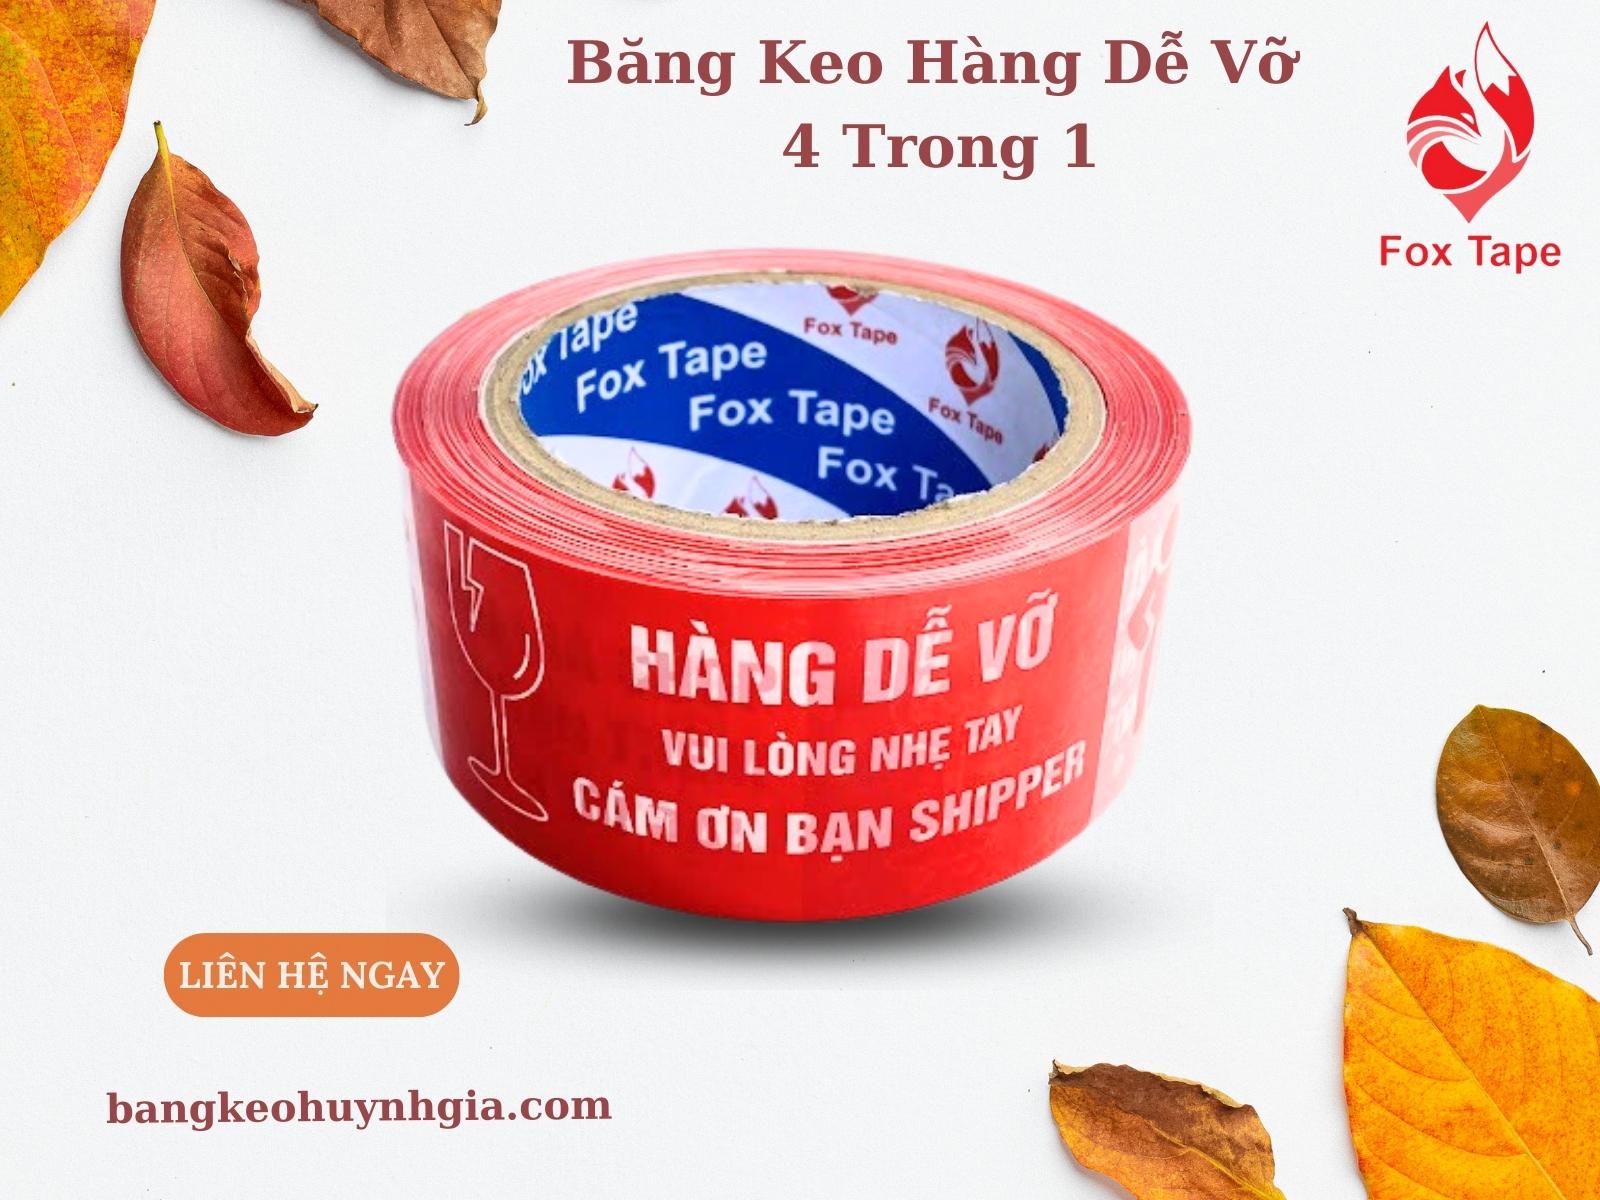 Băng keo cảm ơn bạn đã mua hàng- Băng Keo Huỳnh Gia- Quận Bình Tân- Huỳnh Gia Tape